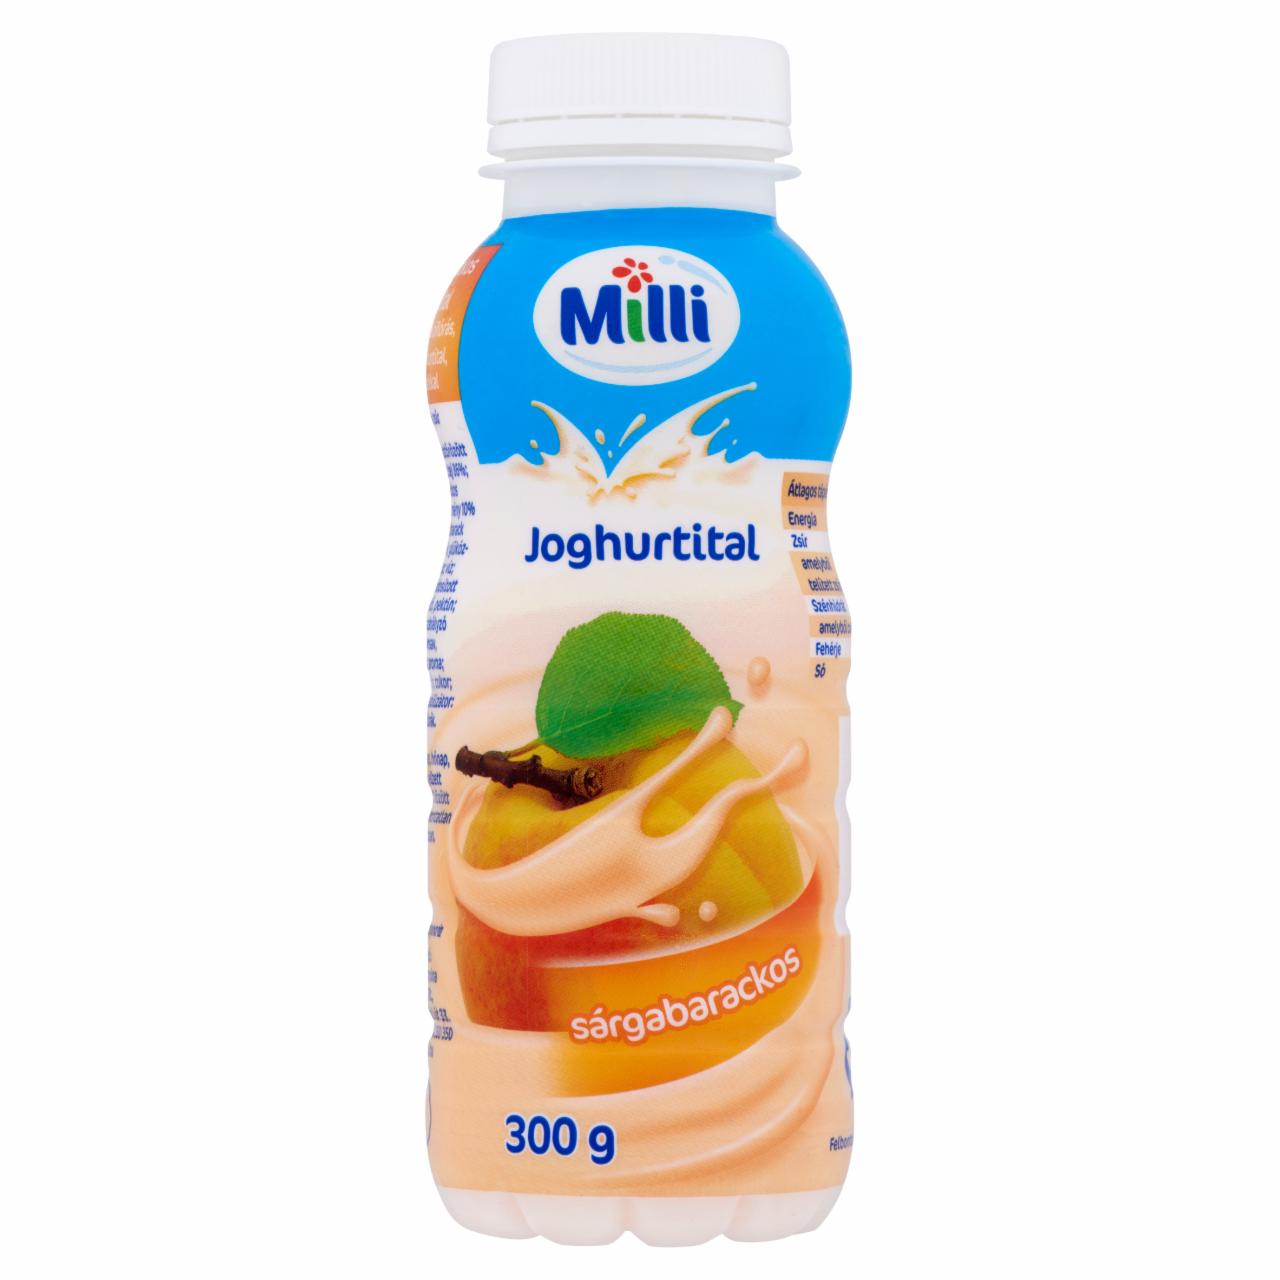 Képek - Milli zsírszegény sárgabarackos joghurtital 300 g